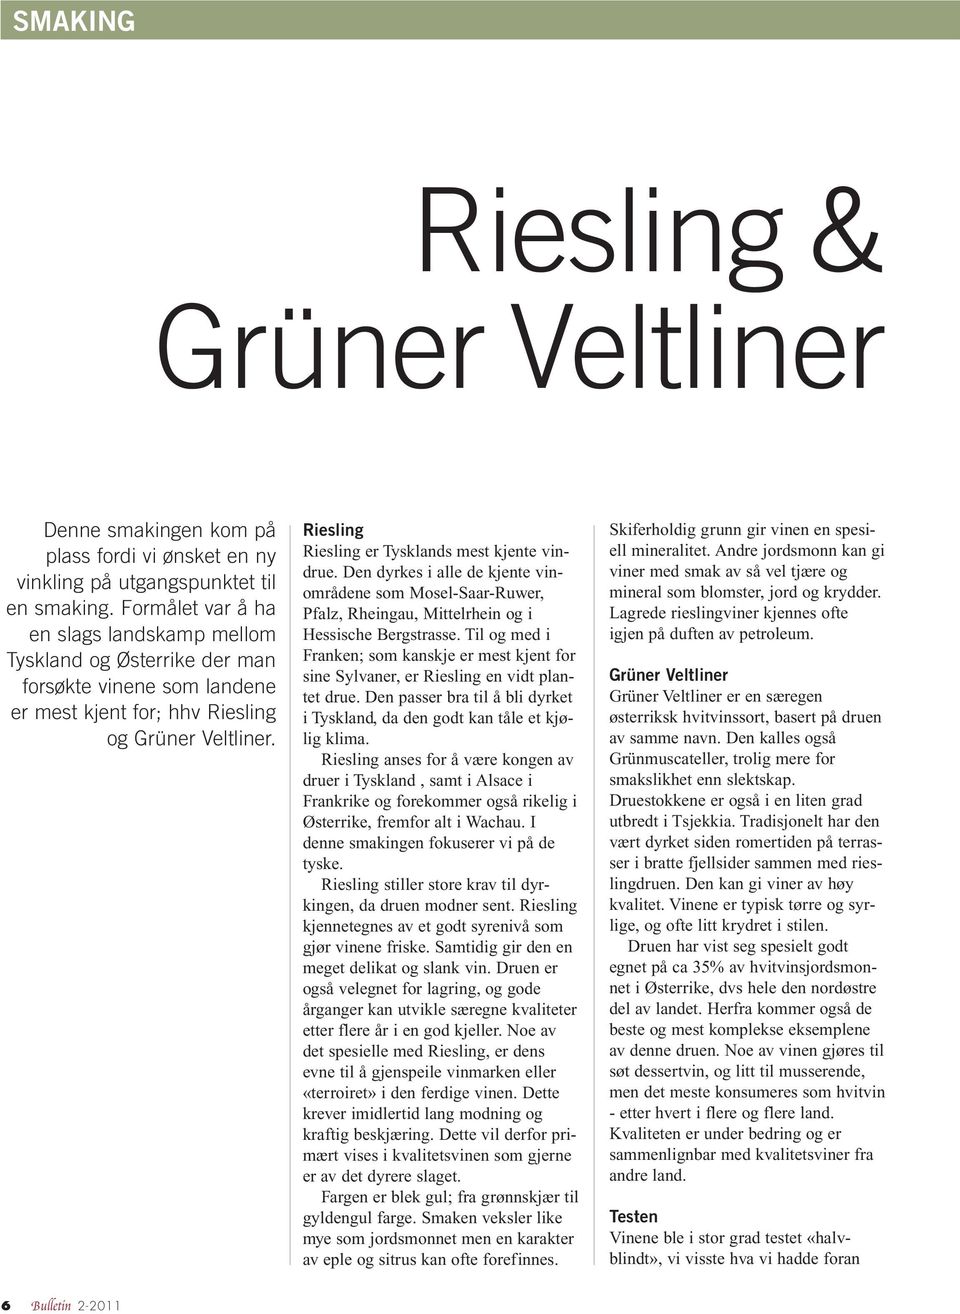 Riesling Riesling er Tysklands mest kjente vindrue. Den dyrkes i alle de kjente vinområdene som Mosel-Saar-Ruwer, Pfalz, Rheingau, Mittelrhein og i Hessische Bergstrasse.